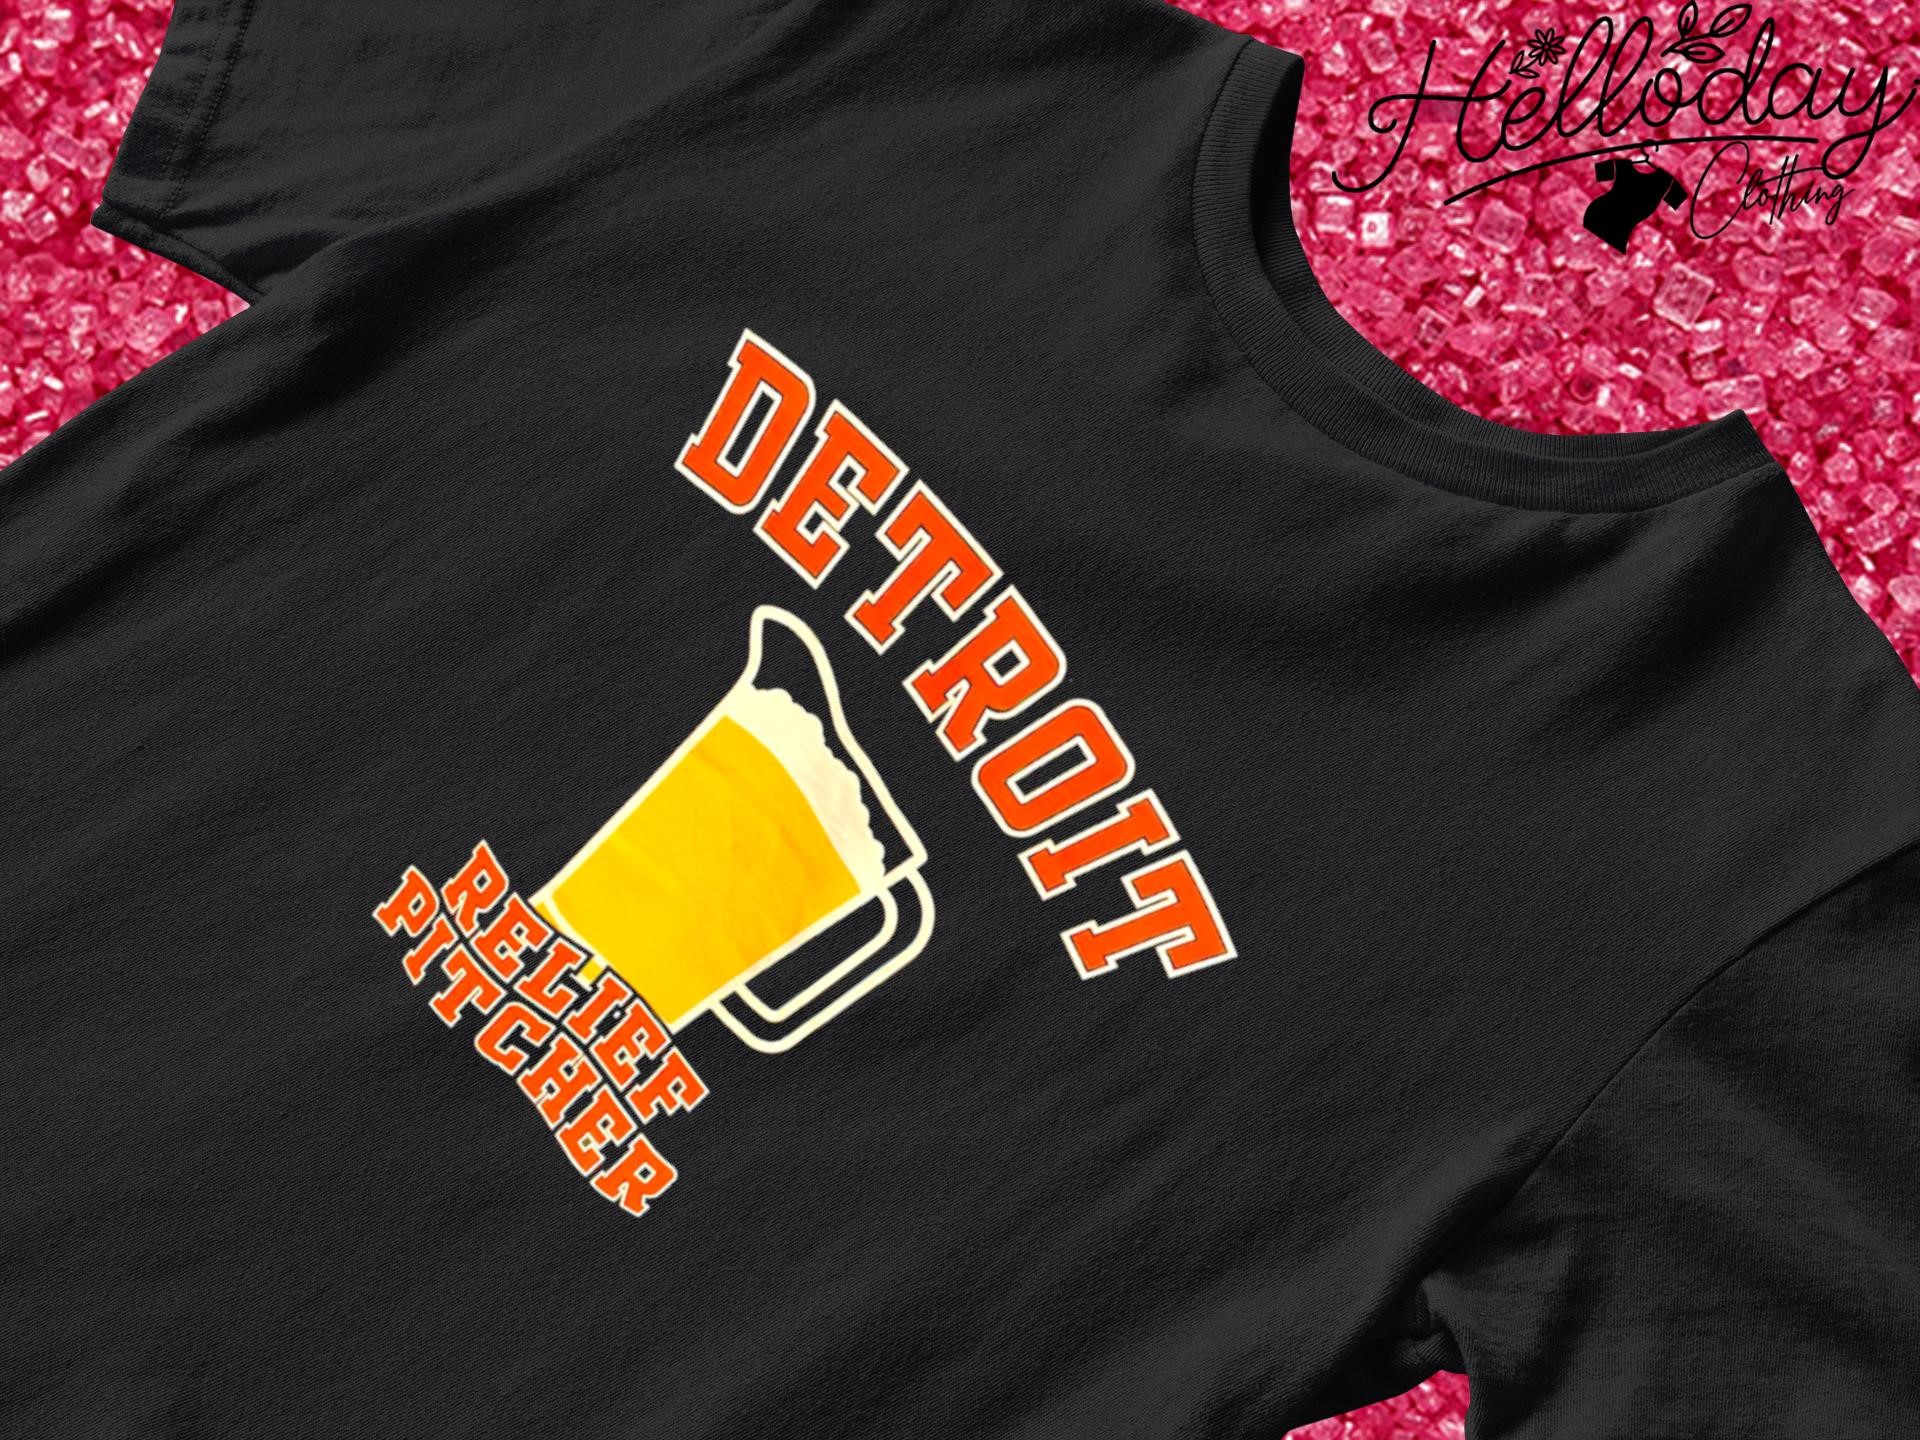 Detroit relief pitcher beer shirt